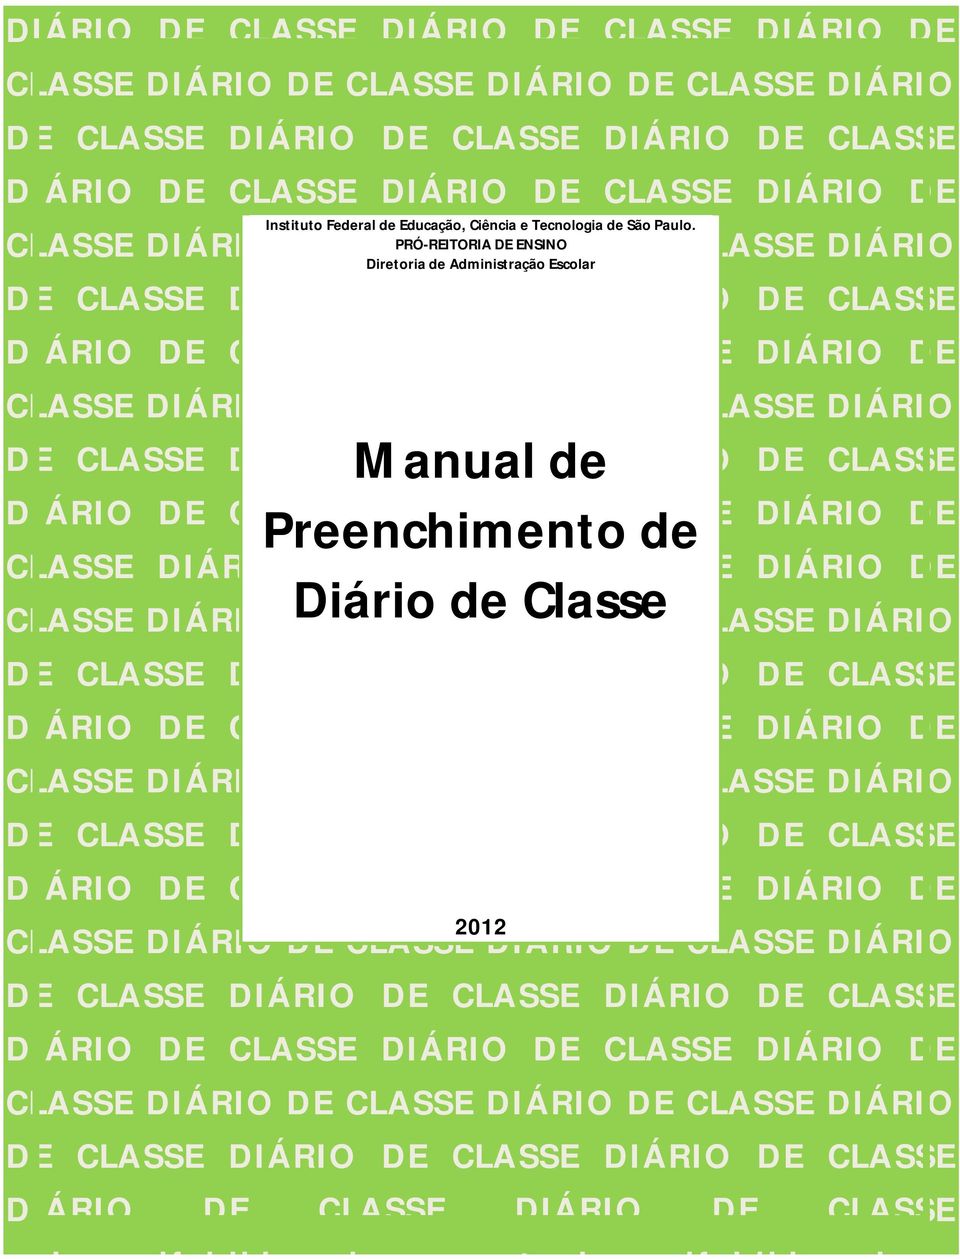 DIÁRIO Manual DE CLASSE de DIÁRIO DE CLASSE DIÁRIO DE CLASSE Preenchimento DIÁRIO DE CLASSE de DIÁRIO DE CLASSE DIÁRIO DE DIÁRIO DE CLASSE DIÁRIO DE Diário de